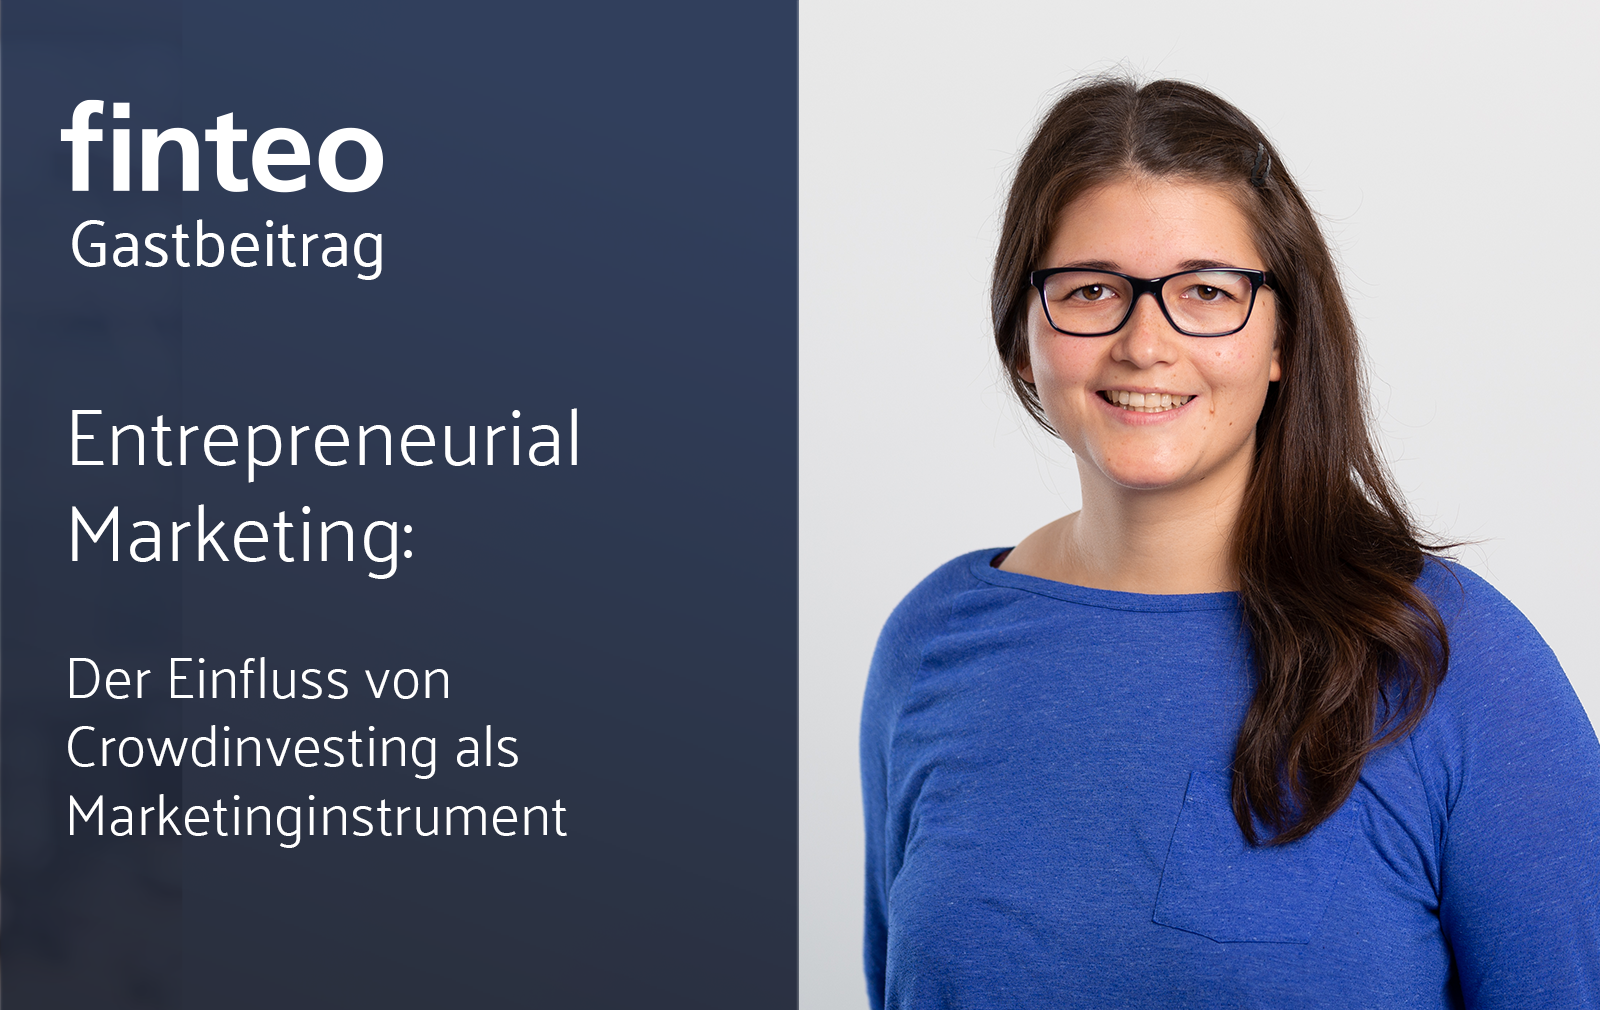 finteo.de|Entrepreneurial Marketing: Der Einfluss von Crowdinvesting als Marketinginstrument-Gastbeitrag – Entrepreneural Marketing